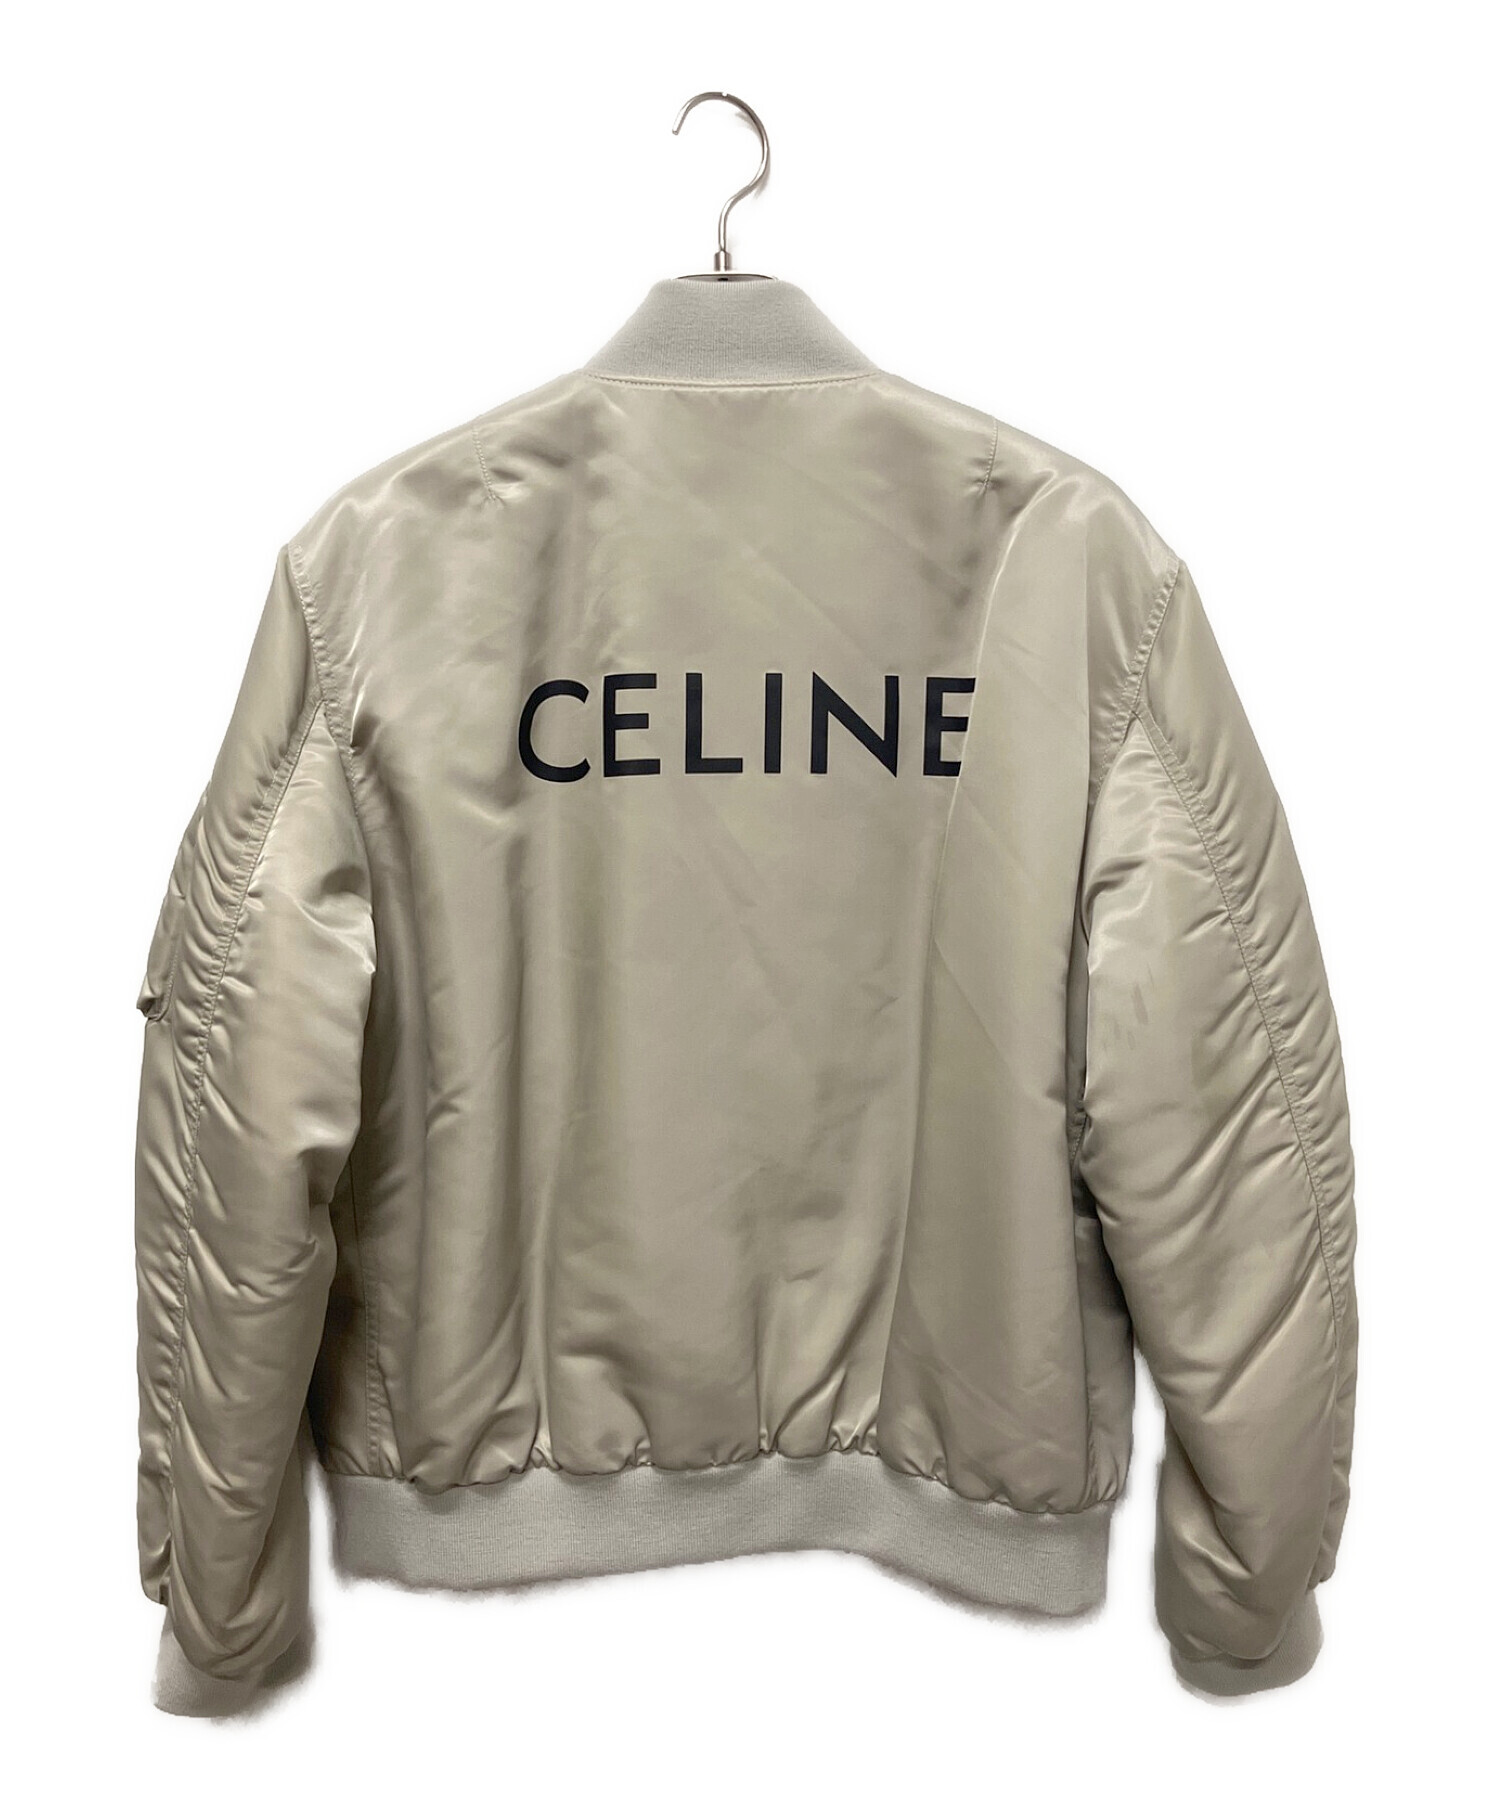 CELINE (セリーヌ) ナイロン ツイル ボンバージャケット ライトグレー サイズ:50